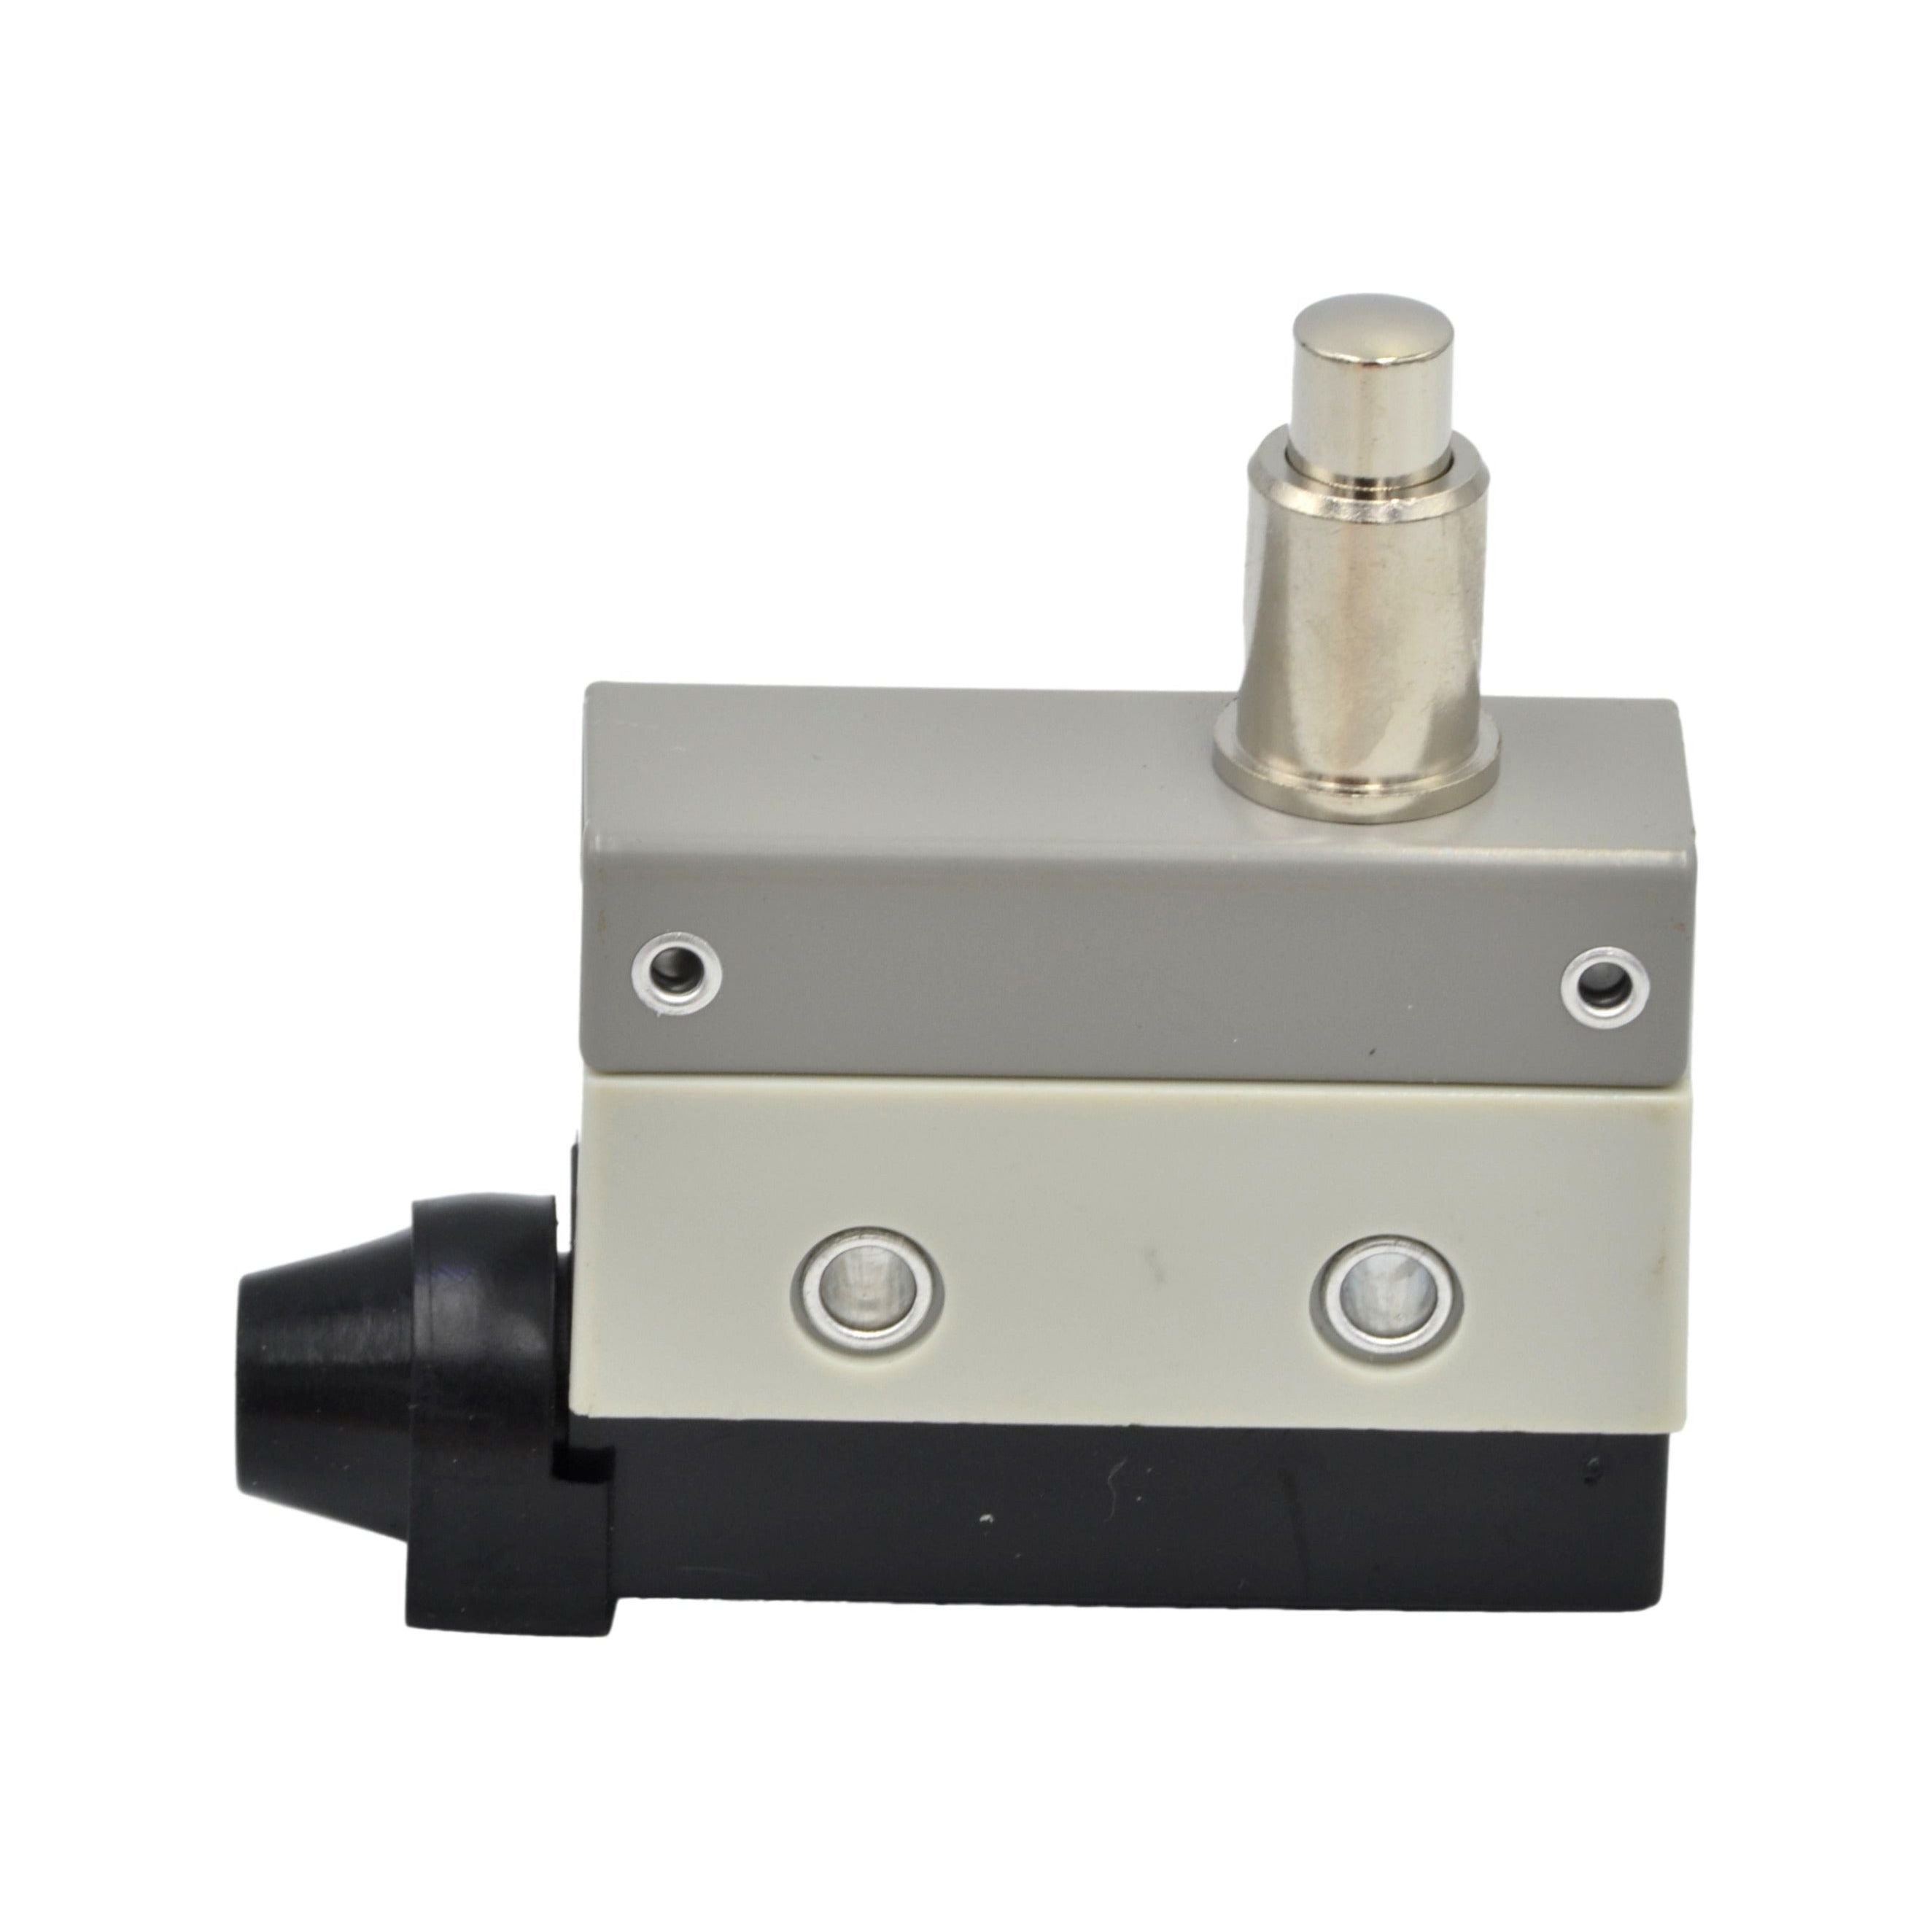 AZ-7110 Pin Plunger Limit Switch